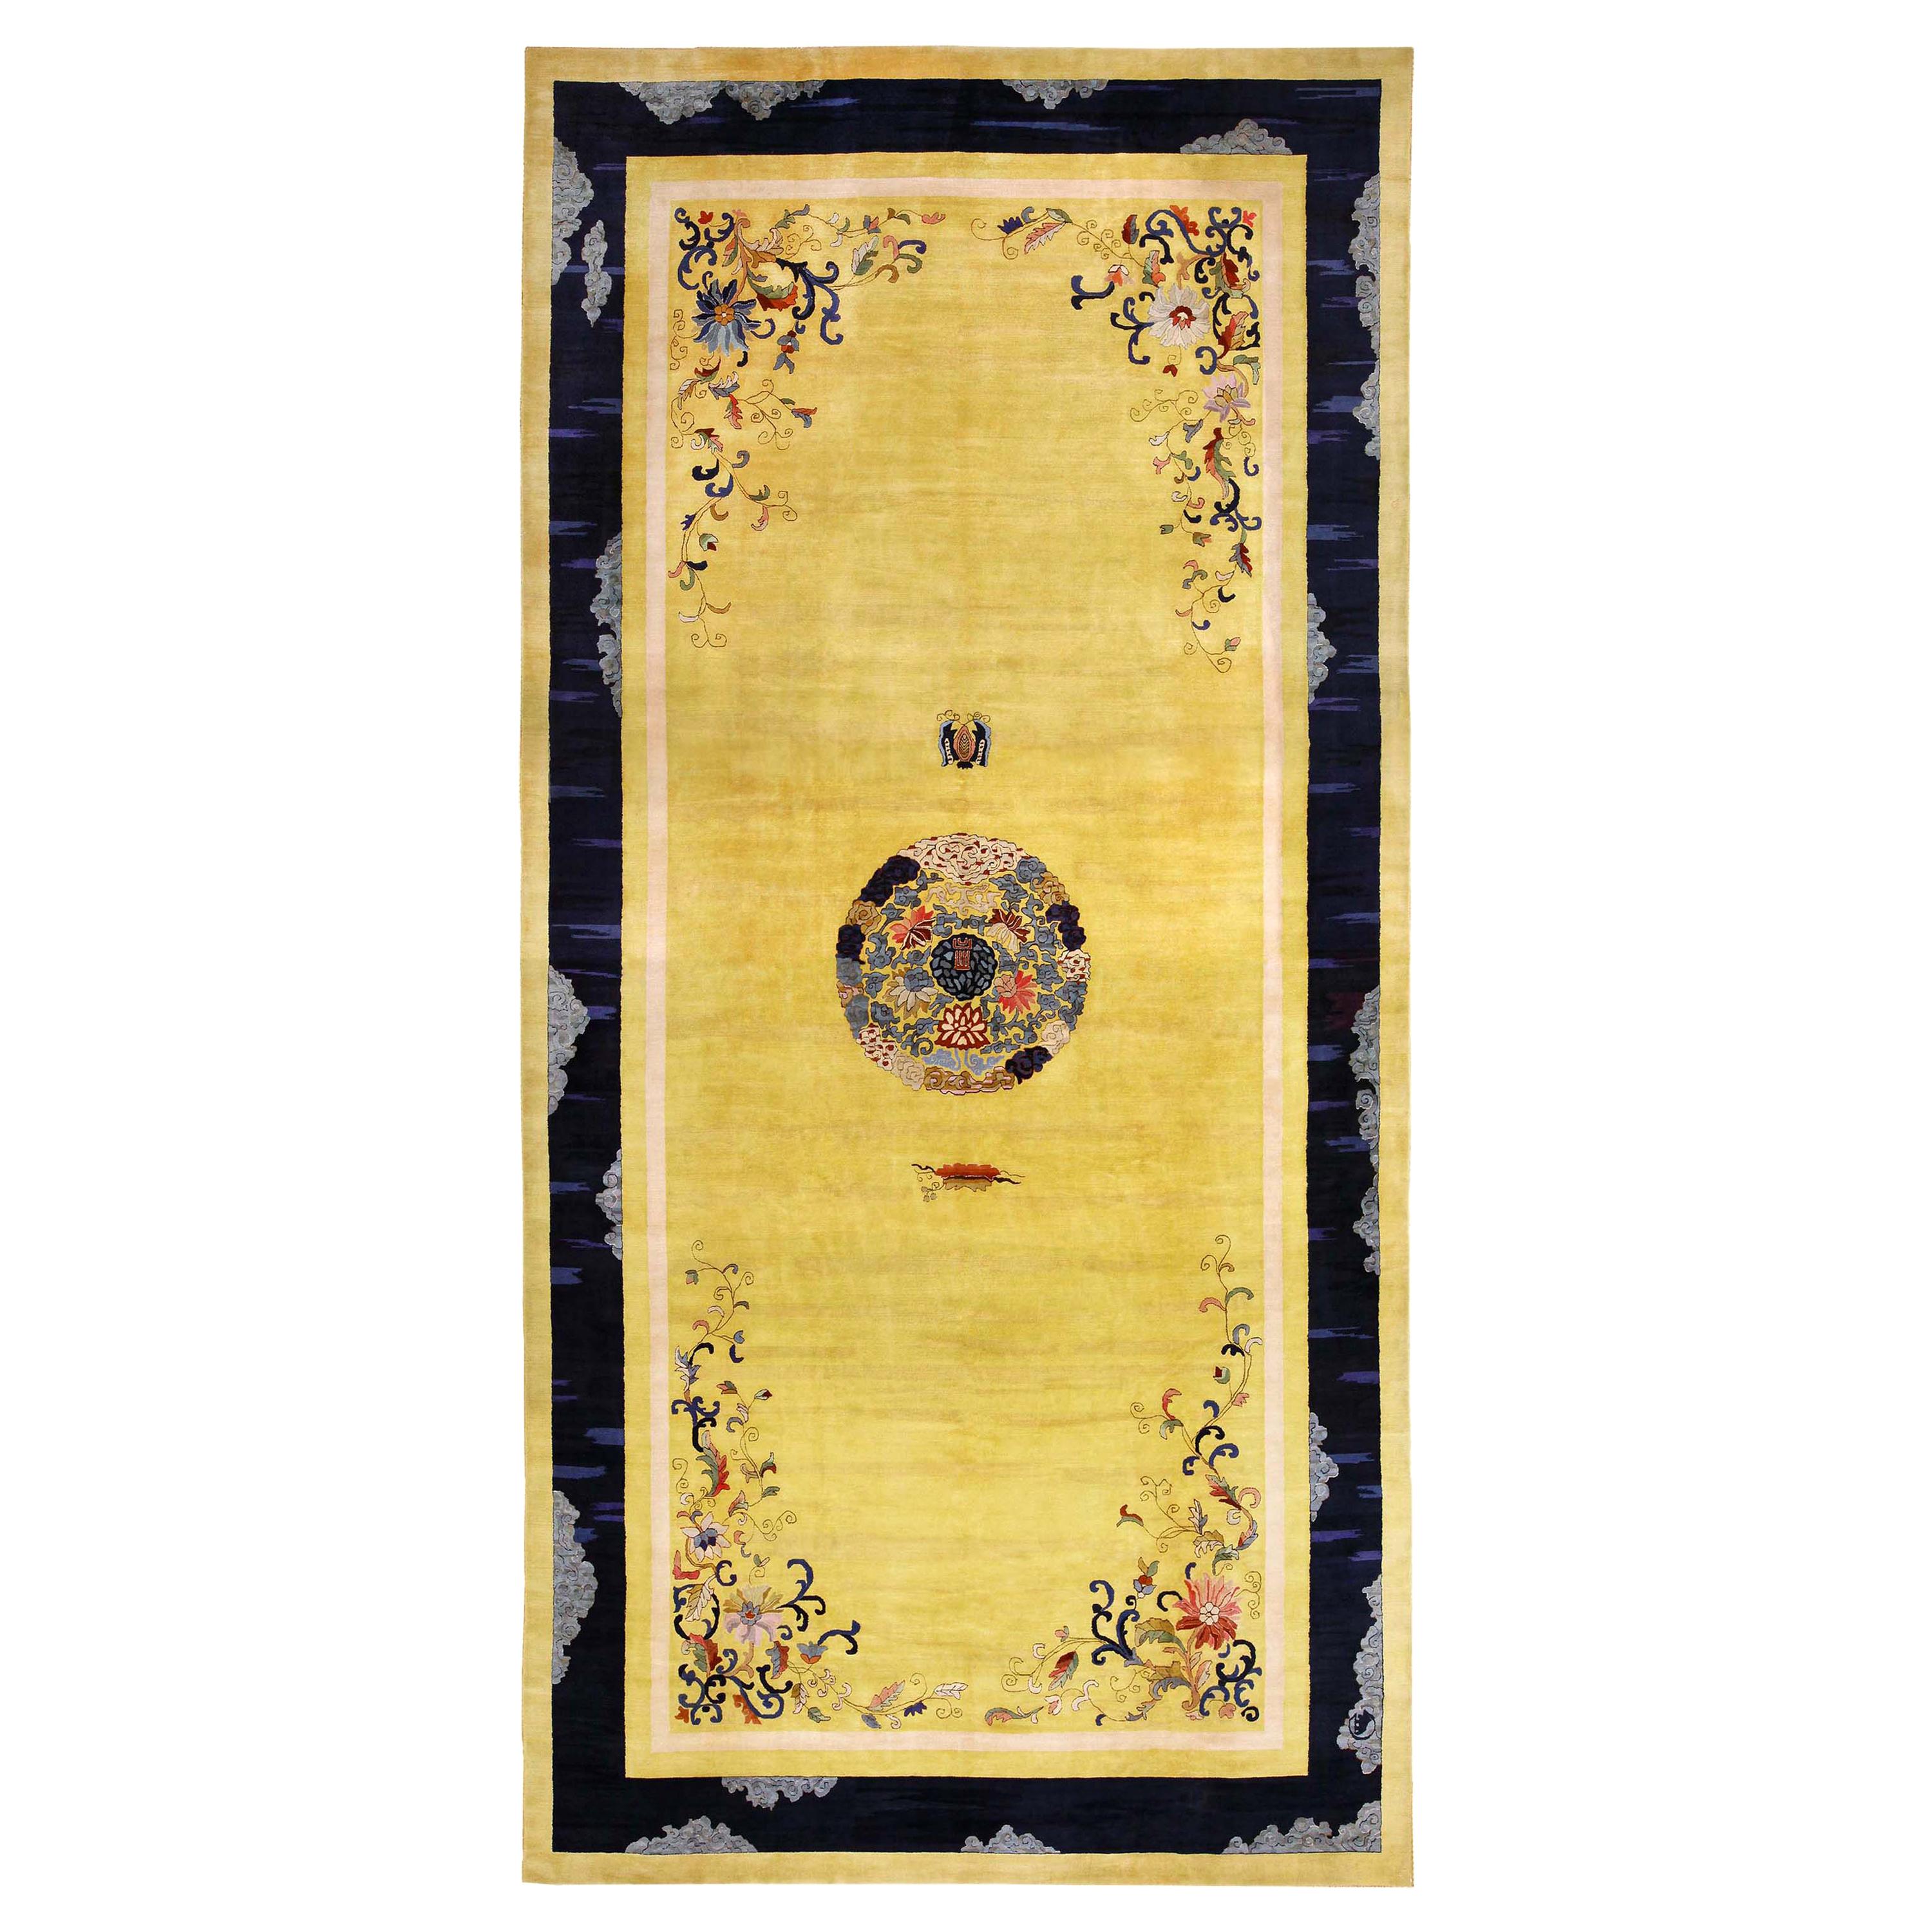 Antiker chinesischer Teppich. Größe: 11 Fuß 3 Zoll x 22 Fuß 6 Zoll